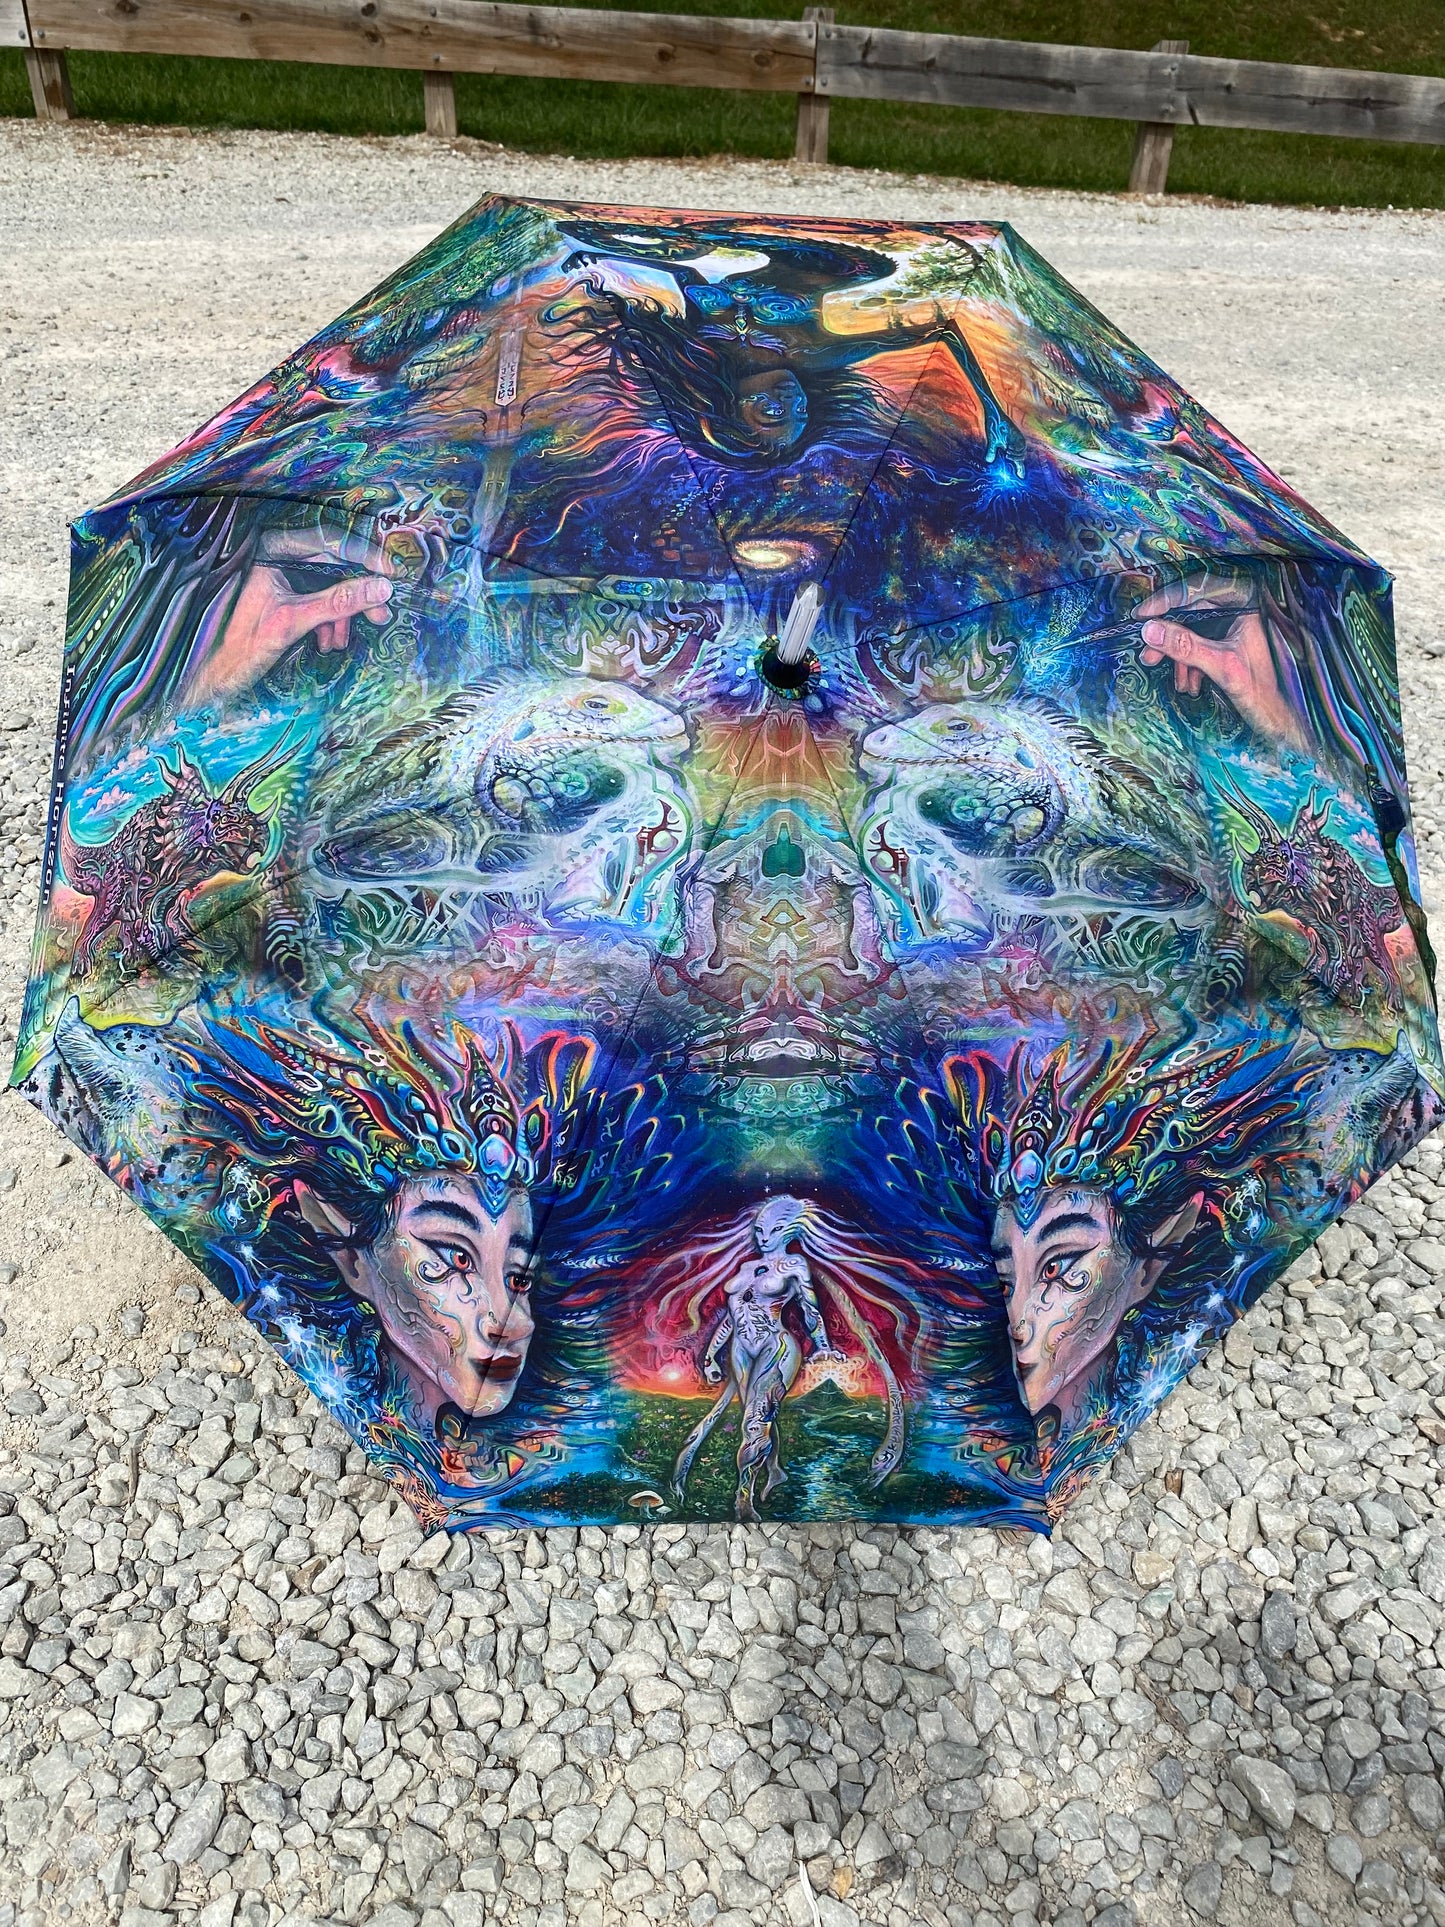 Celestial Creator Umbrellas